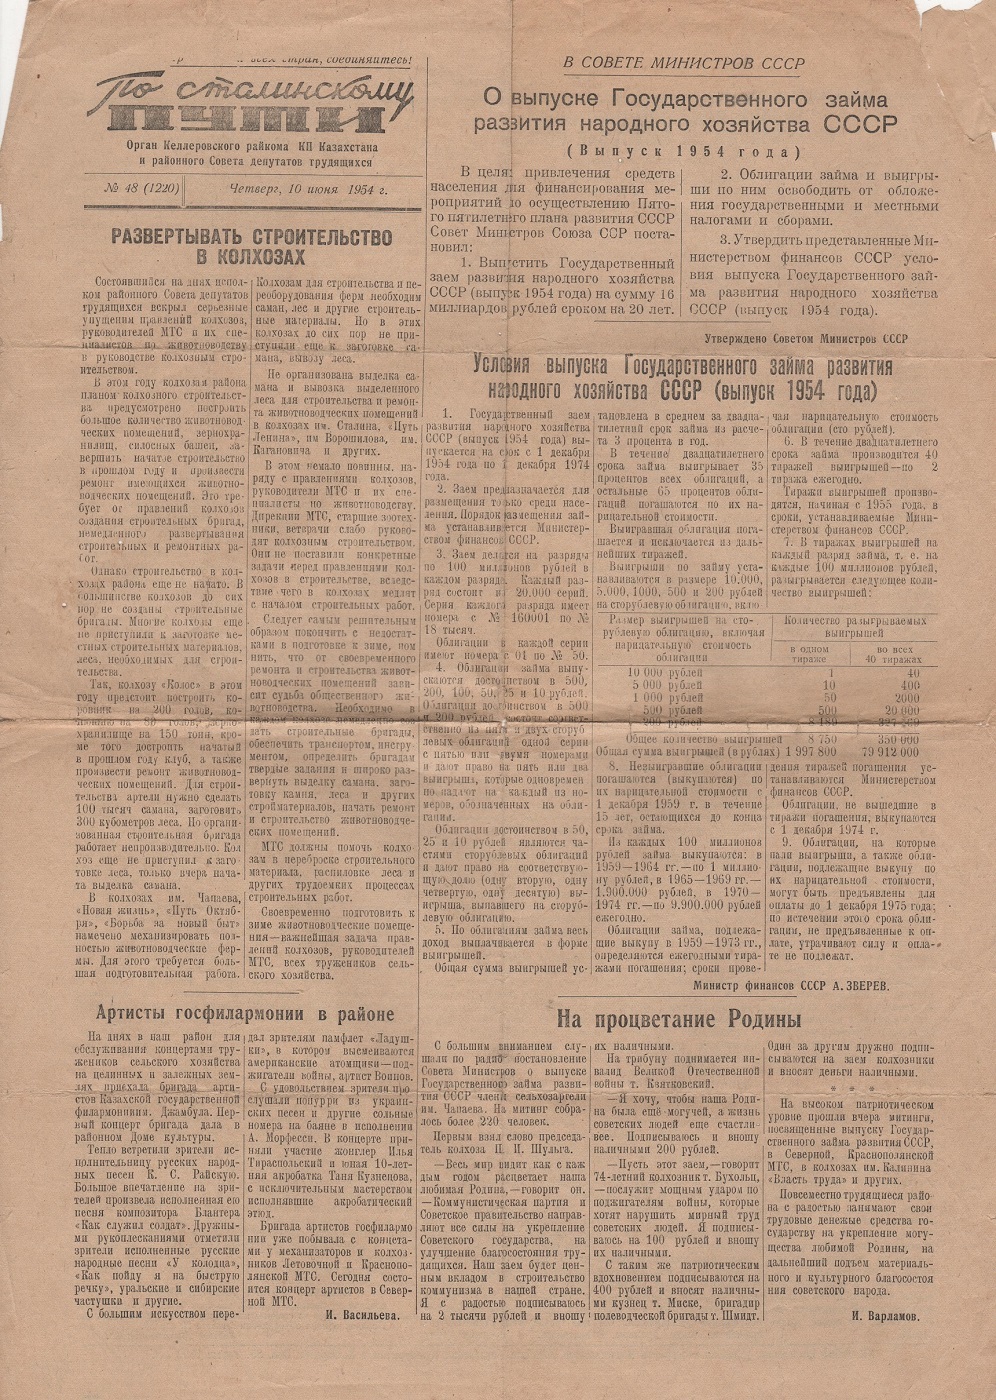 Газети. Газета "По сталинскому пути" № 48 (1220) від  10 червня, 1954 року